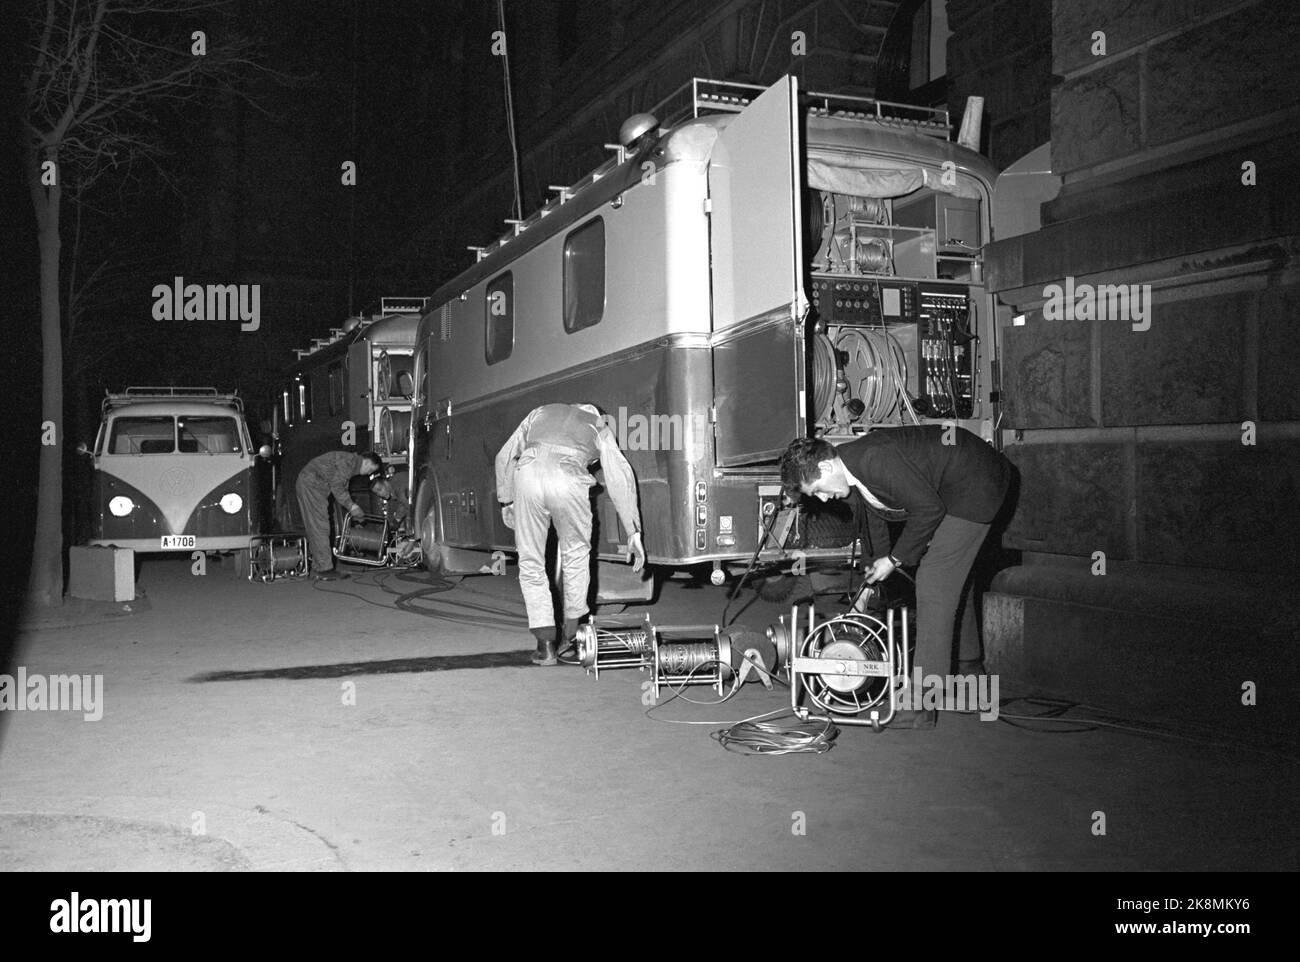 Oslo janvier 1964 - débat politique sur la télévision au Théâtre central d'Oslo. « Où est le communisme ? » Montre toute l'équipe de télévision en action. Directeur de programme Kjell Arnljot Wig. Le débat se déroule entre le panel et la salle. 4 caméras et 10 microphones sont installés. Dans les autobus du Tinghuset, il y avait beaucoup de vie durant la diffusion. Dans un bus, la commande de la caméra a lieu, dans l'autre commande de son. Photo: Aage Storløkken / actuel / NTB Banque D'Images